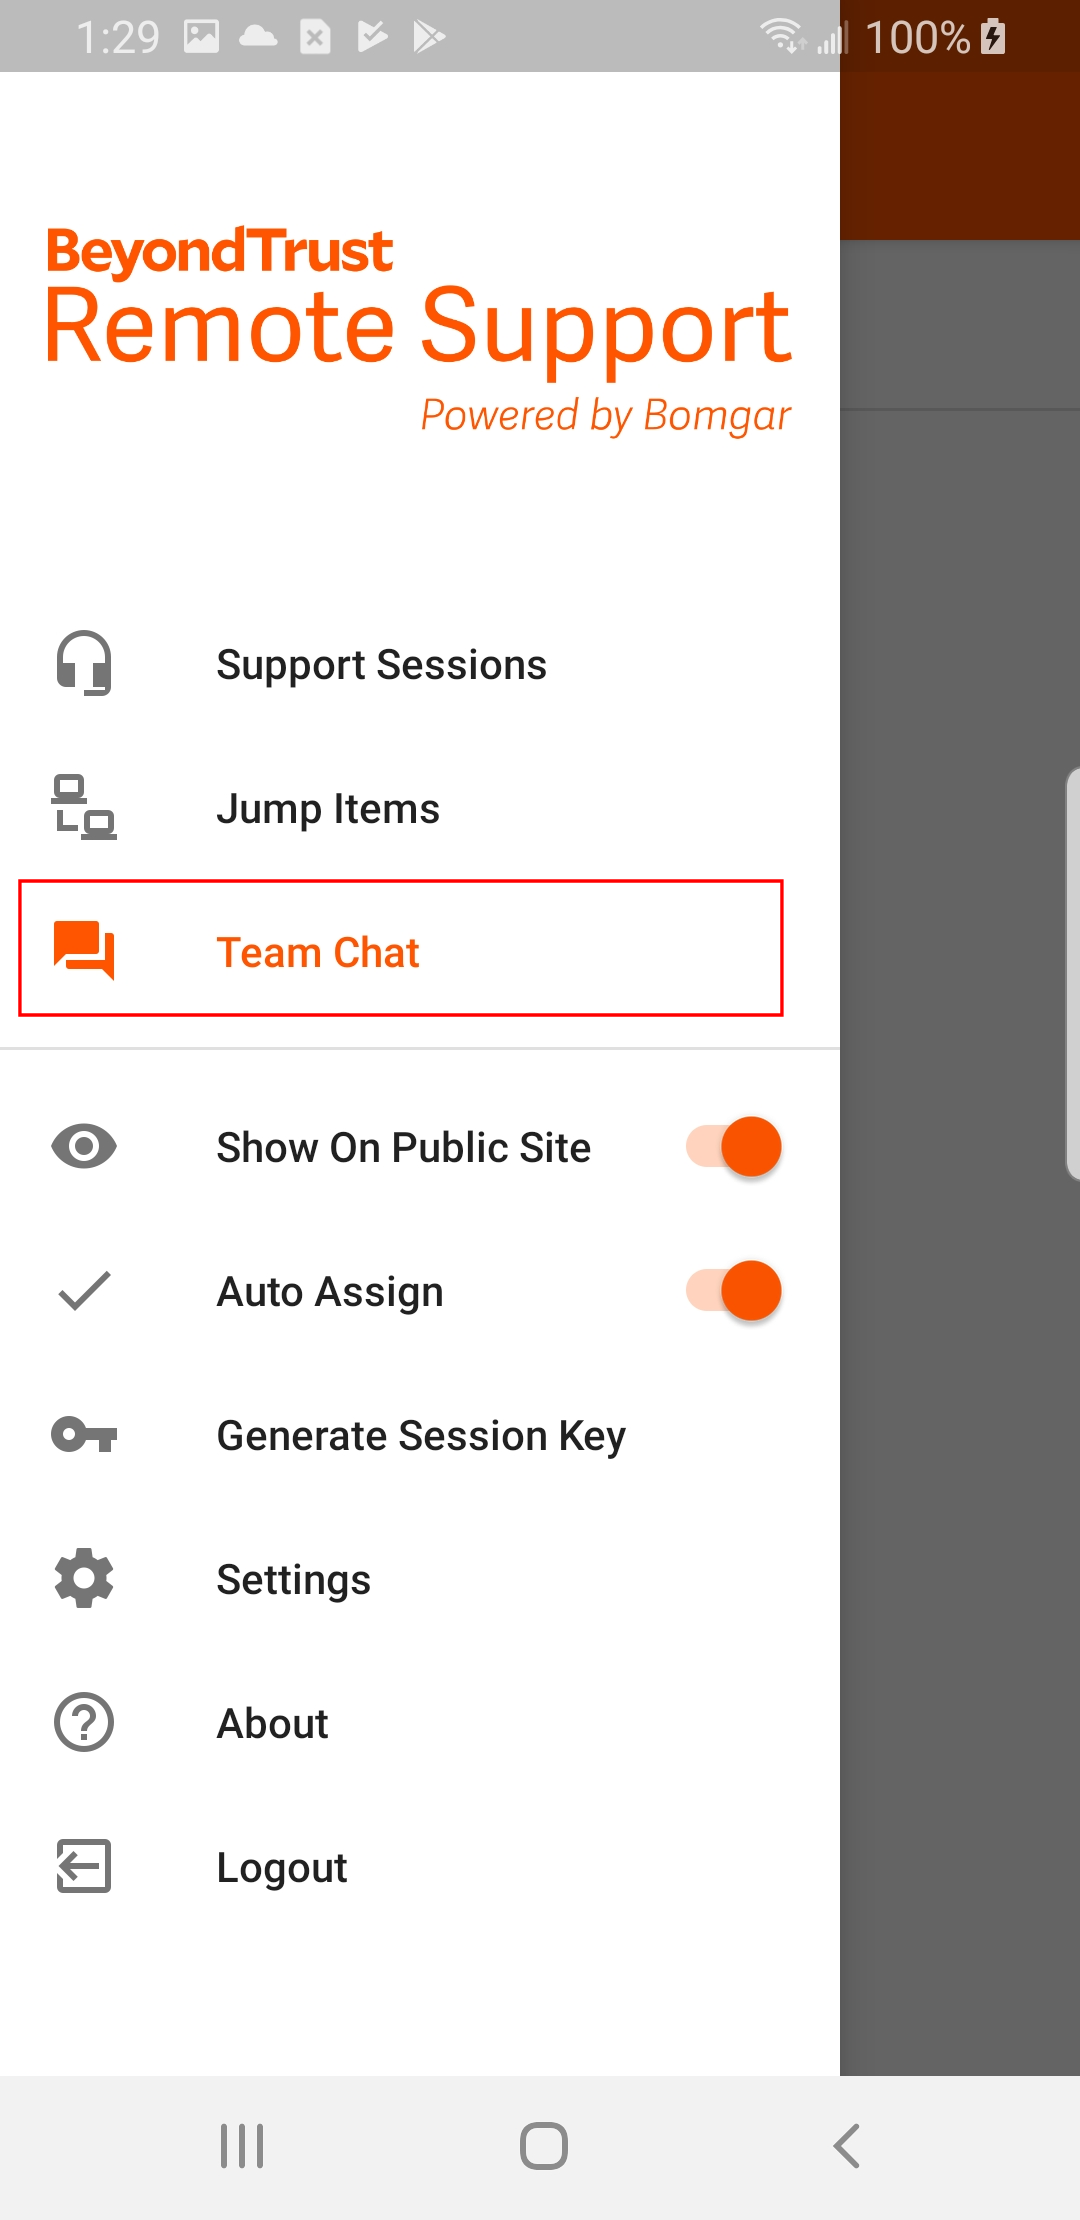 Team Chat menu item